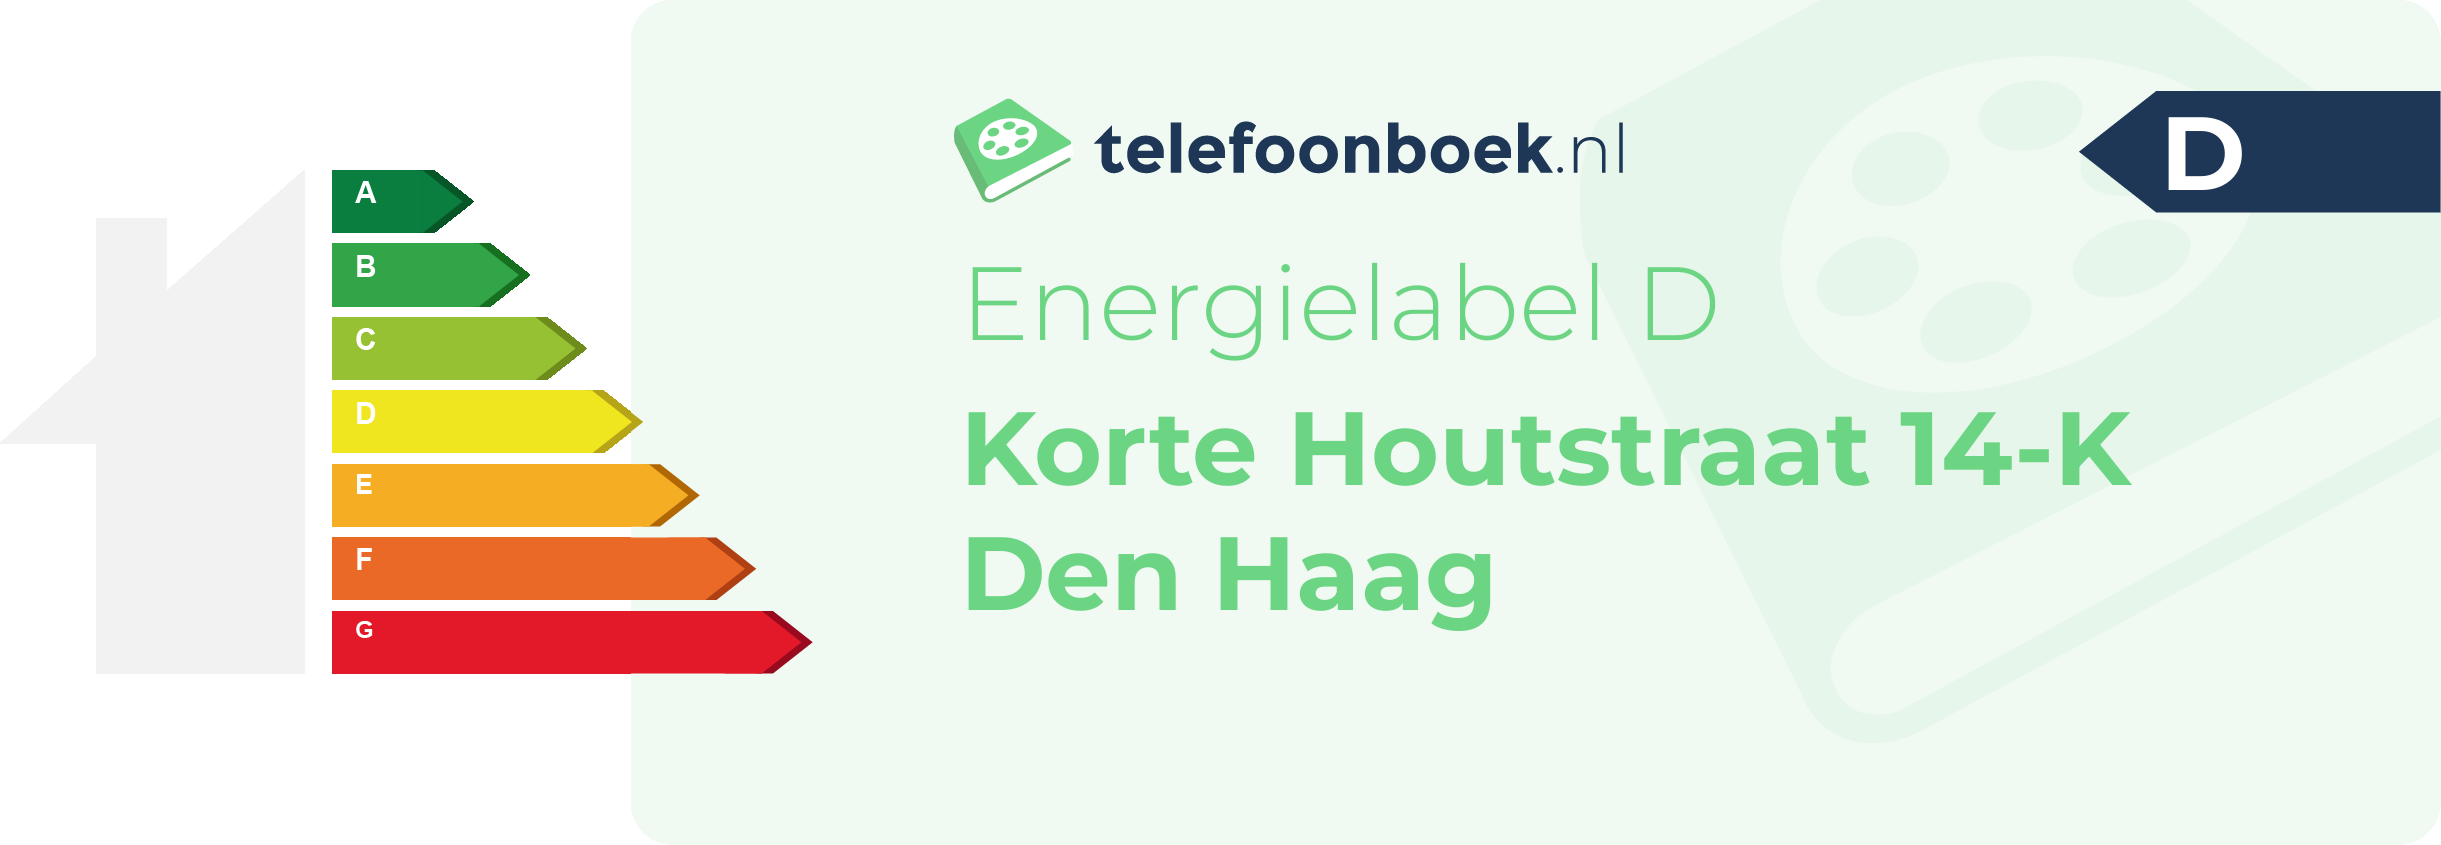 Energielabel Korte Houtstraat 14-K Den Haag